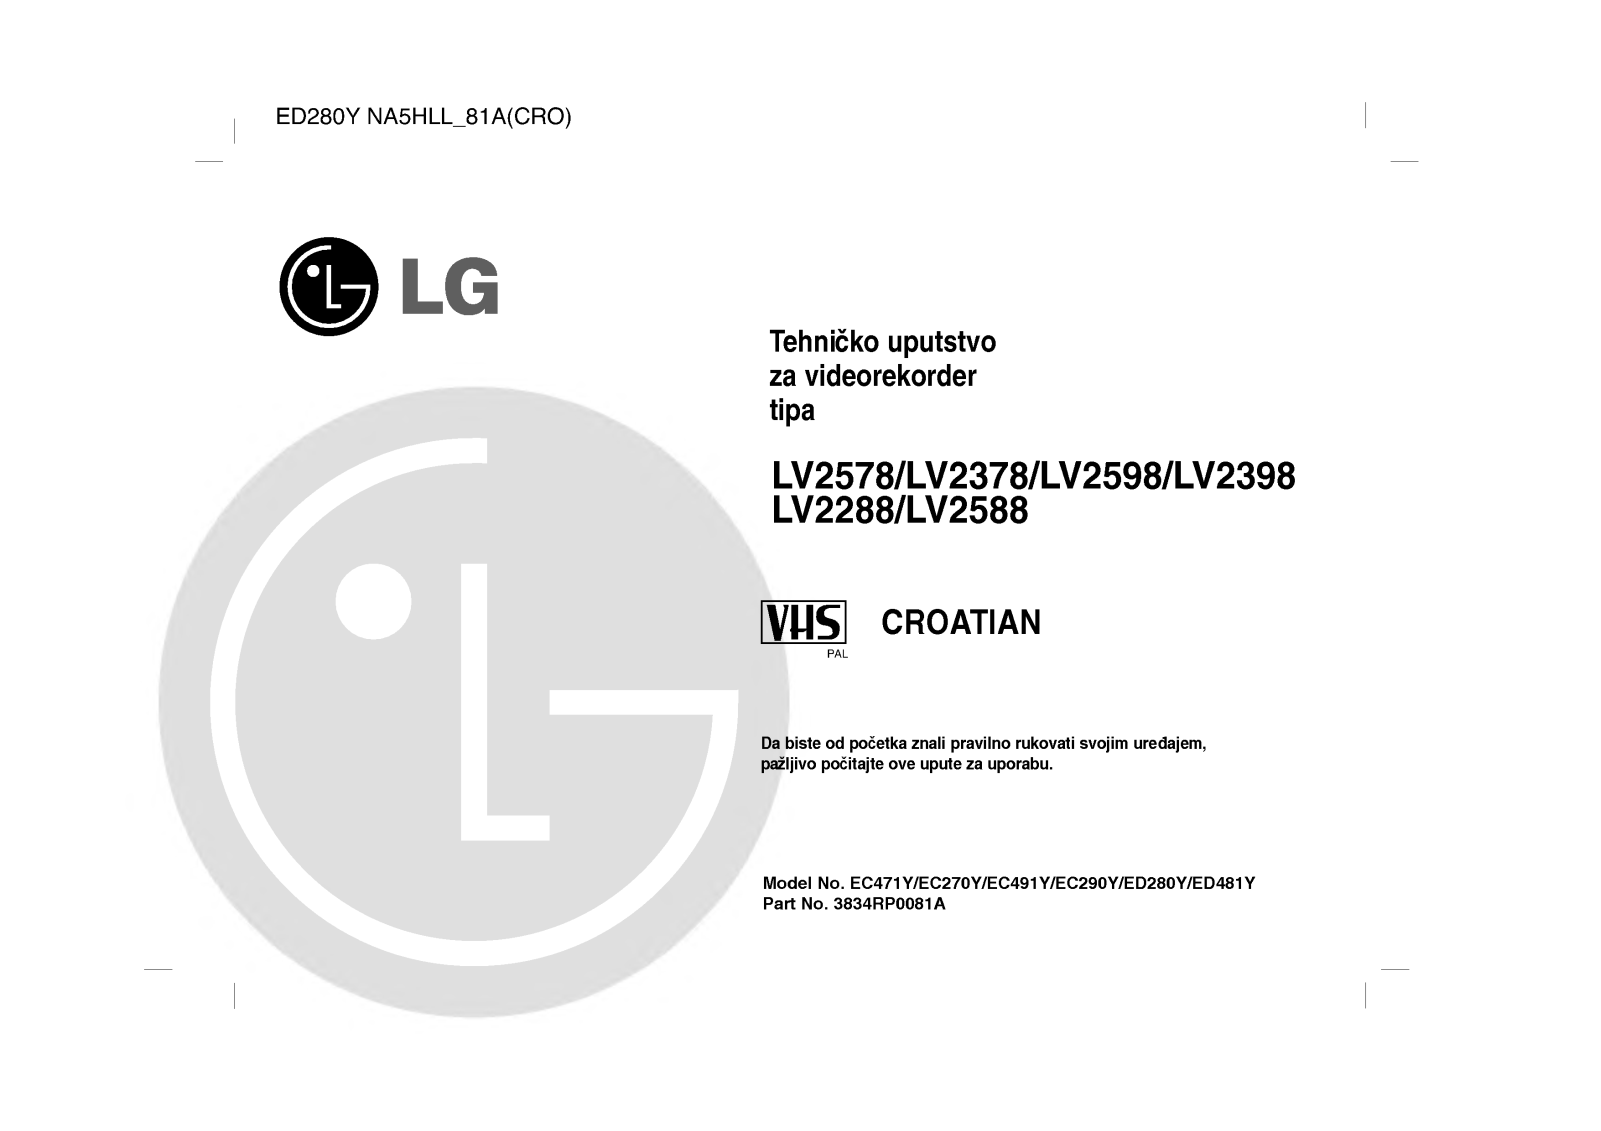 Lg LV2588, LV2288, LV2398, LV2598, LV2378 user Manual